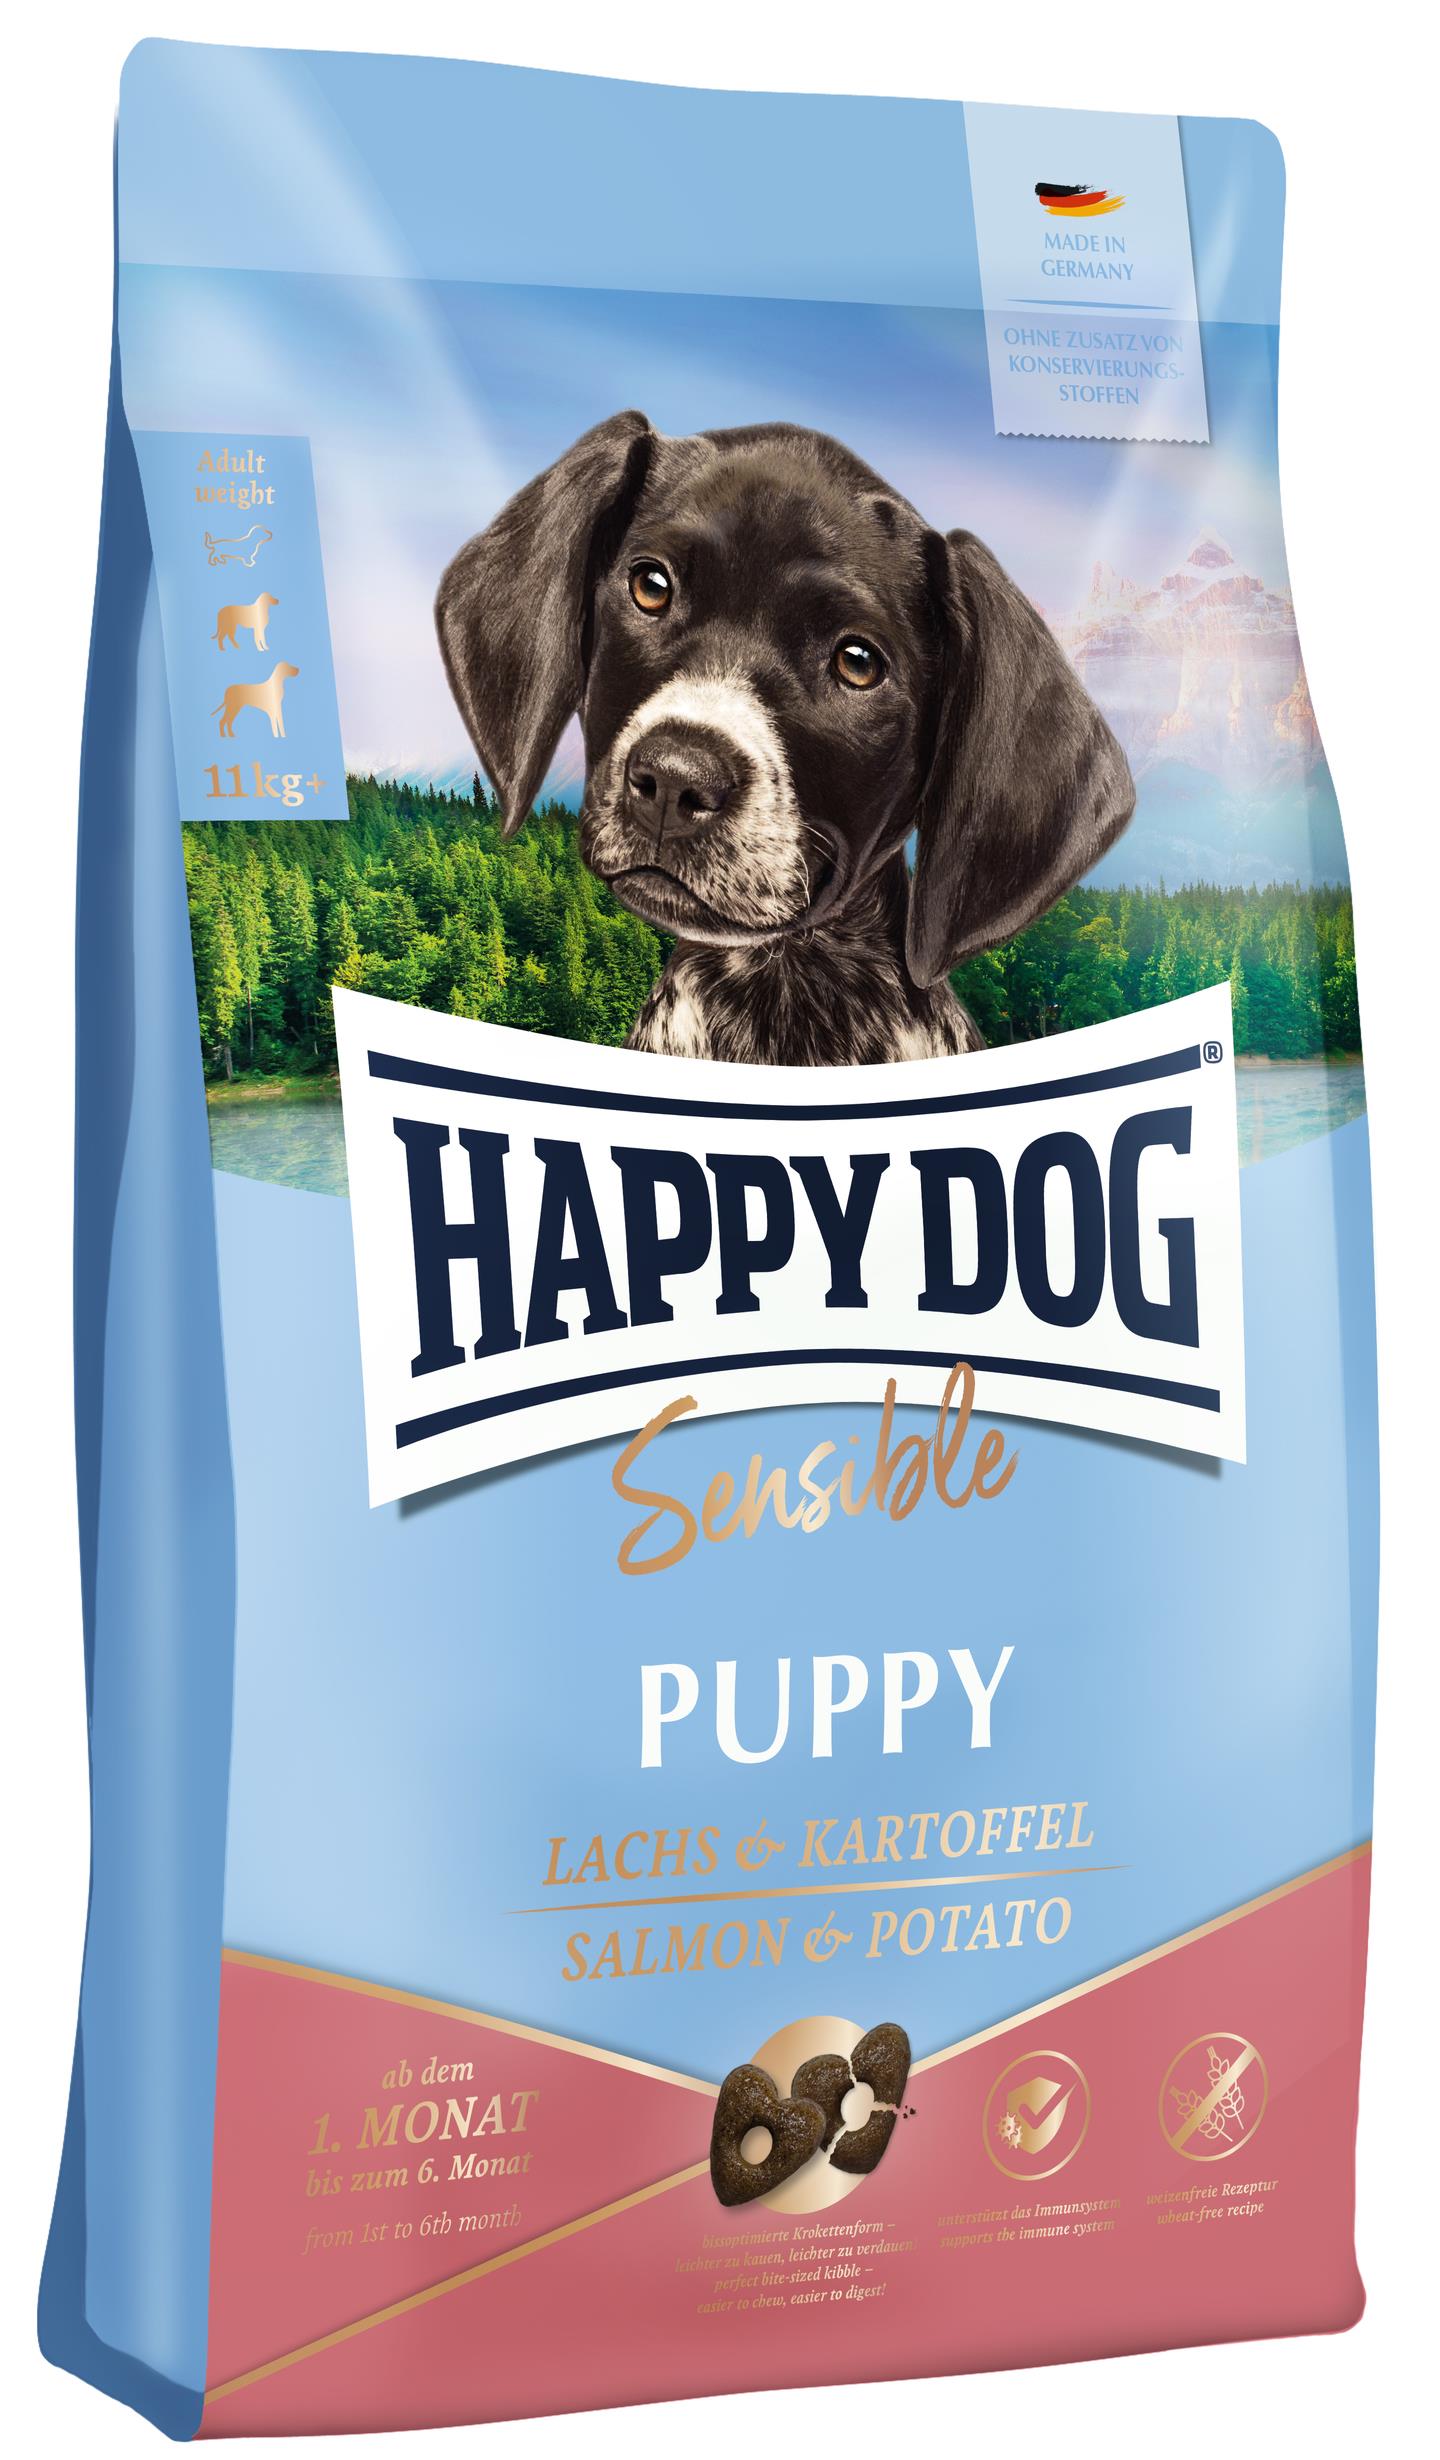 Happy Dog Sensible Puppy Lachs & Kartoffel - Todoanimal.es